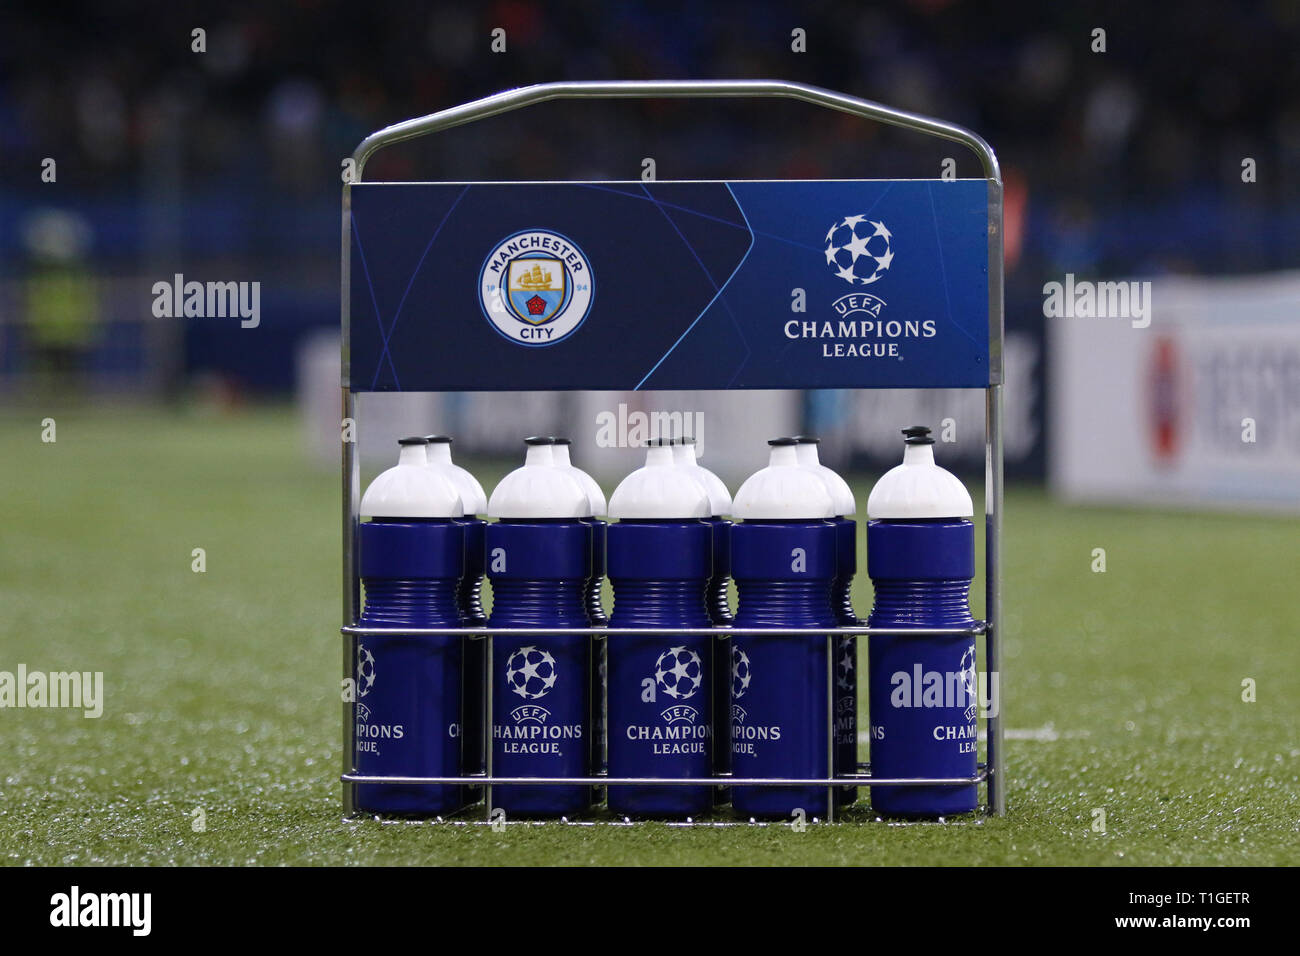 Charkow, Ukraine - Oktober 23, 2018: Bottle Carrier mit Manchester City und die UEFA Champions League Logos auf dem Gras während der UEFA Champions League Stockfoto